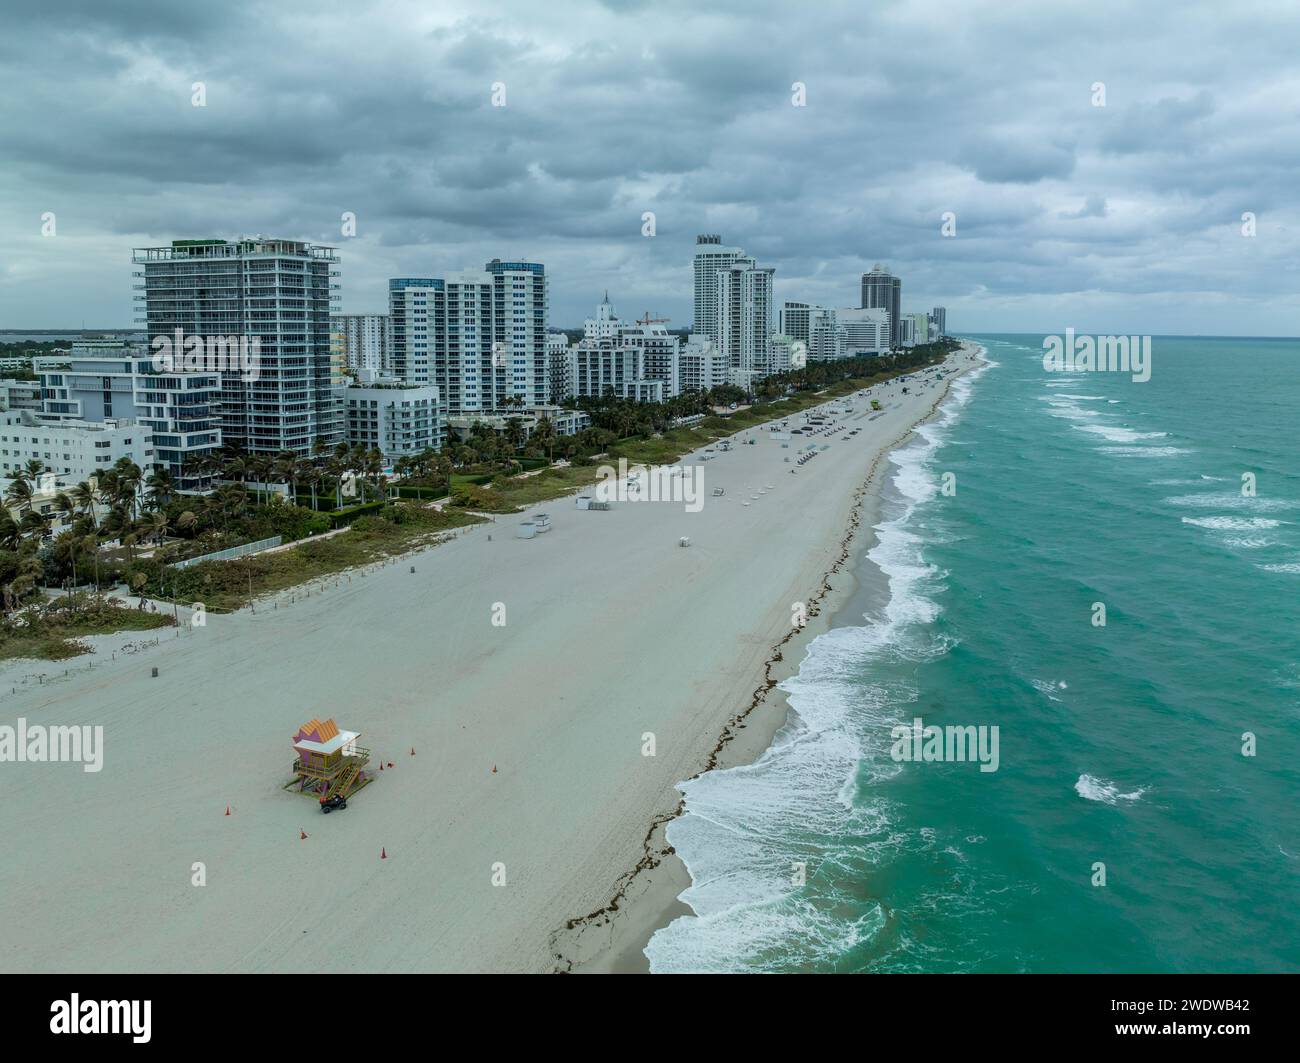 Vue aérienne des hôtels de South Beach et des complexes d'appartements de grande hauteur propriétés immobilières de premier plan à Miami près de l'océan avec le ciel nuageux Banque D'Images